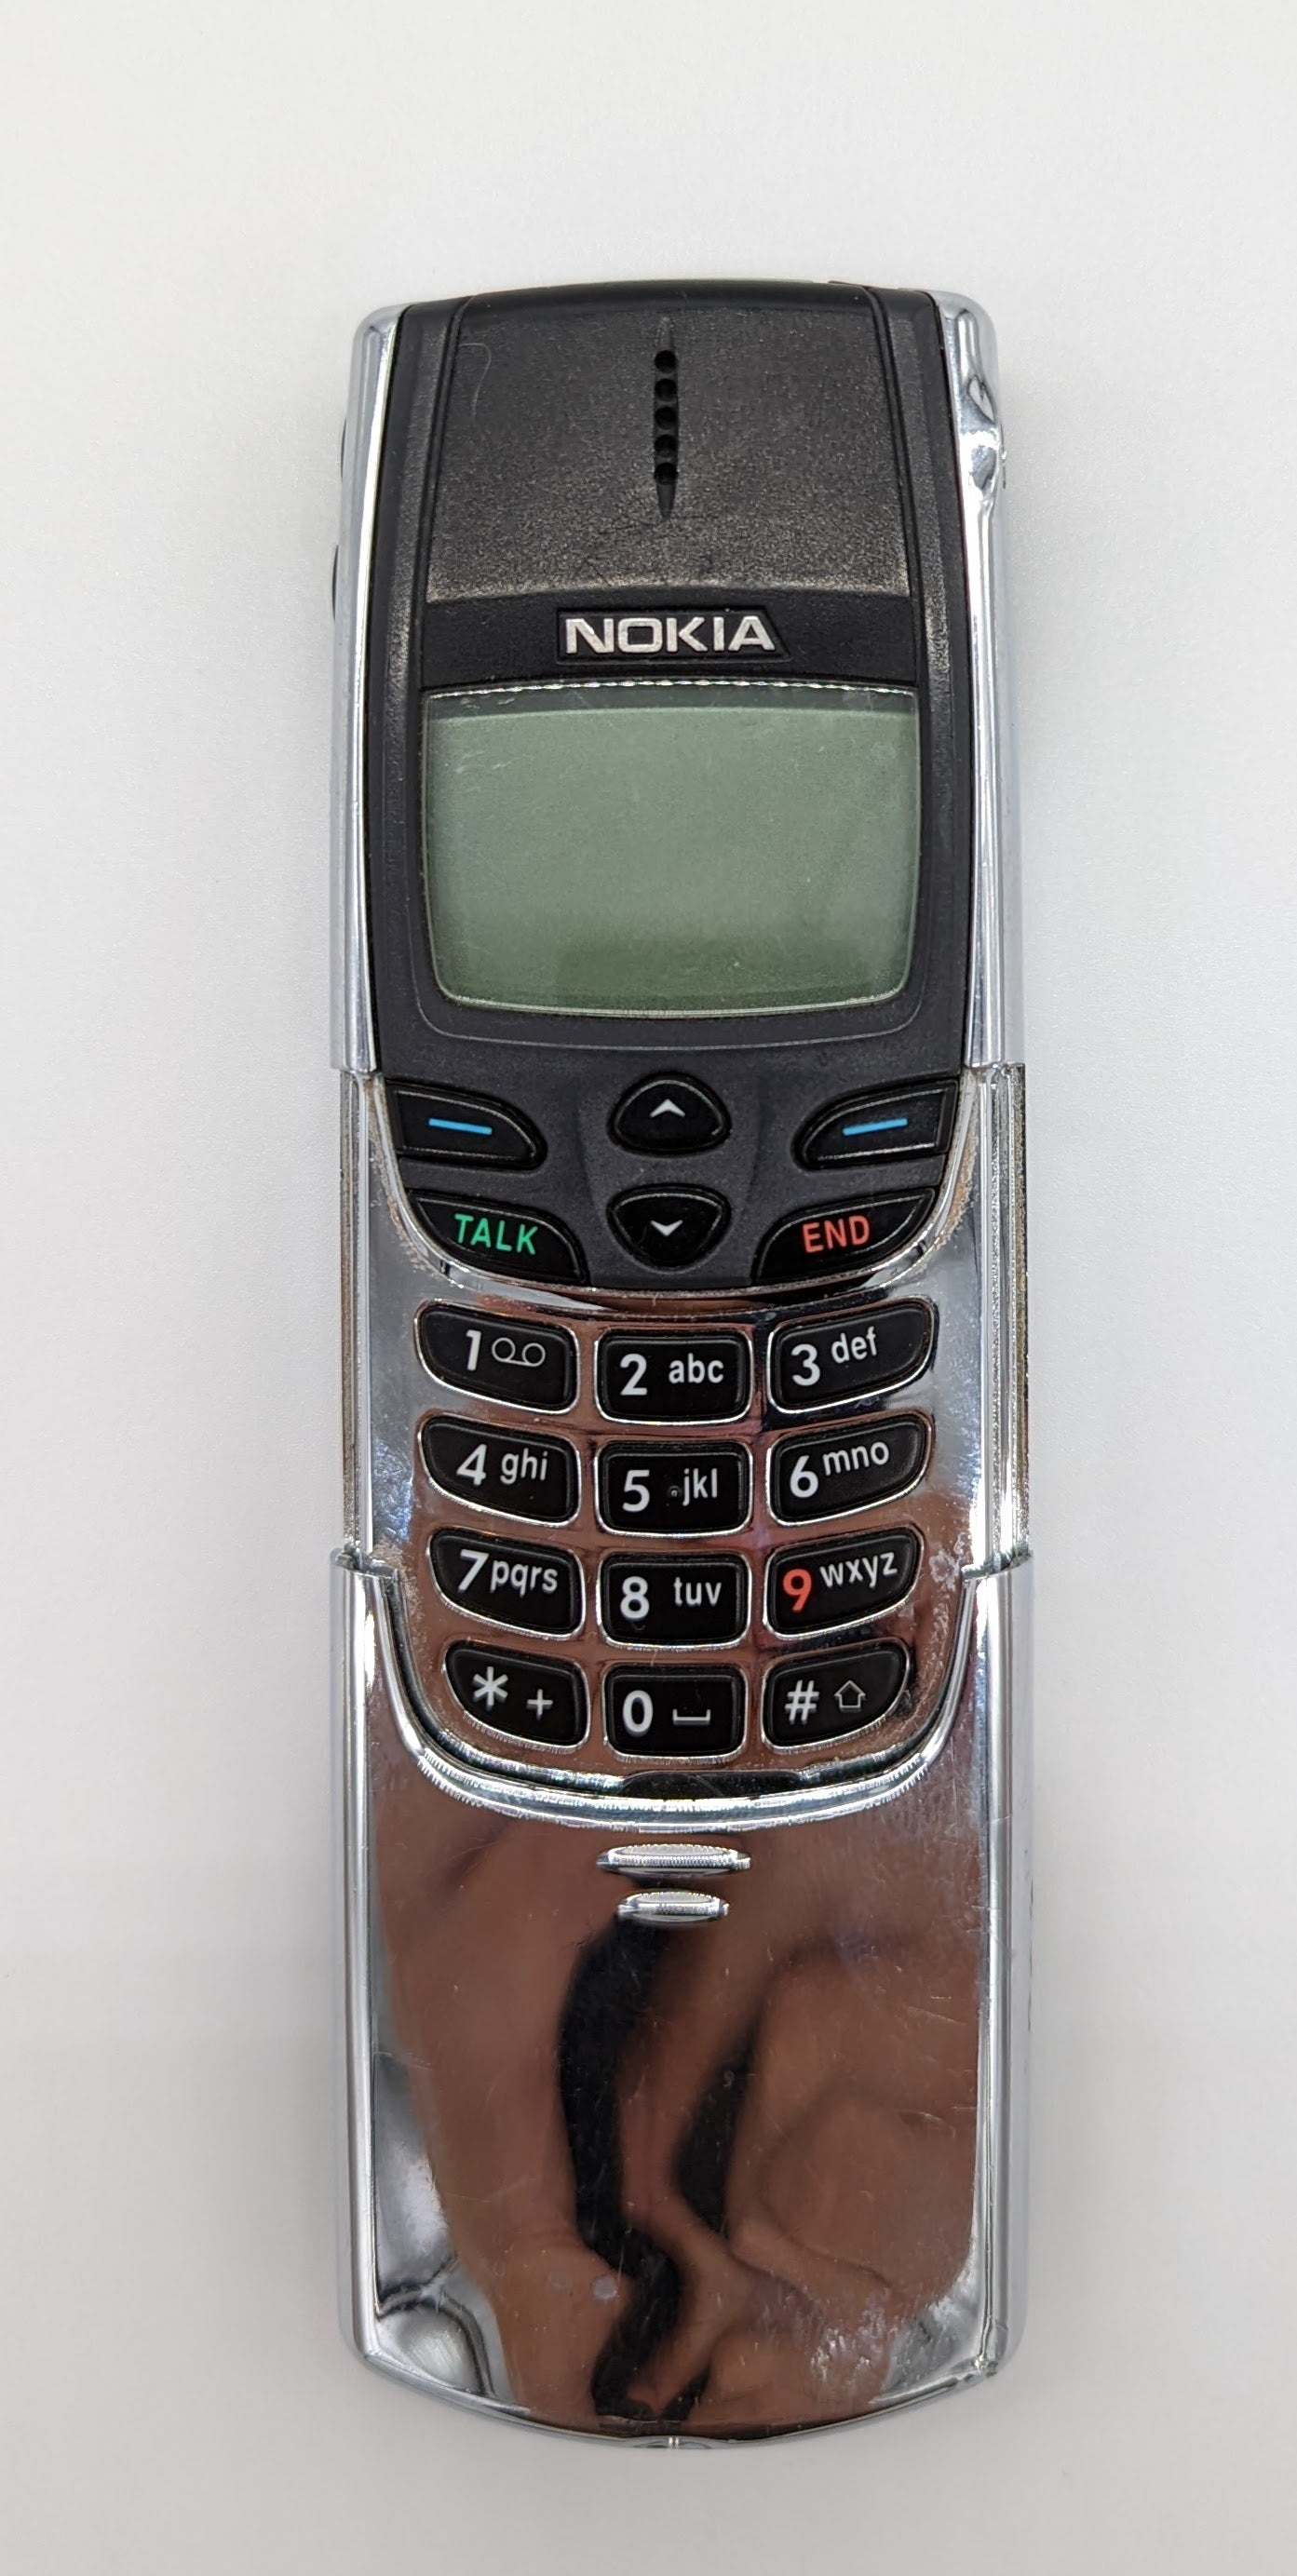 Nokia Phones (1997-2009) – Westport Tech Museum